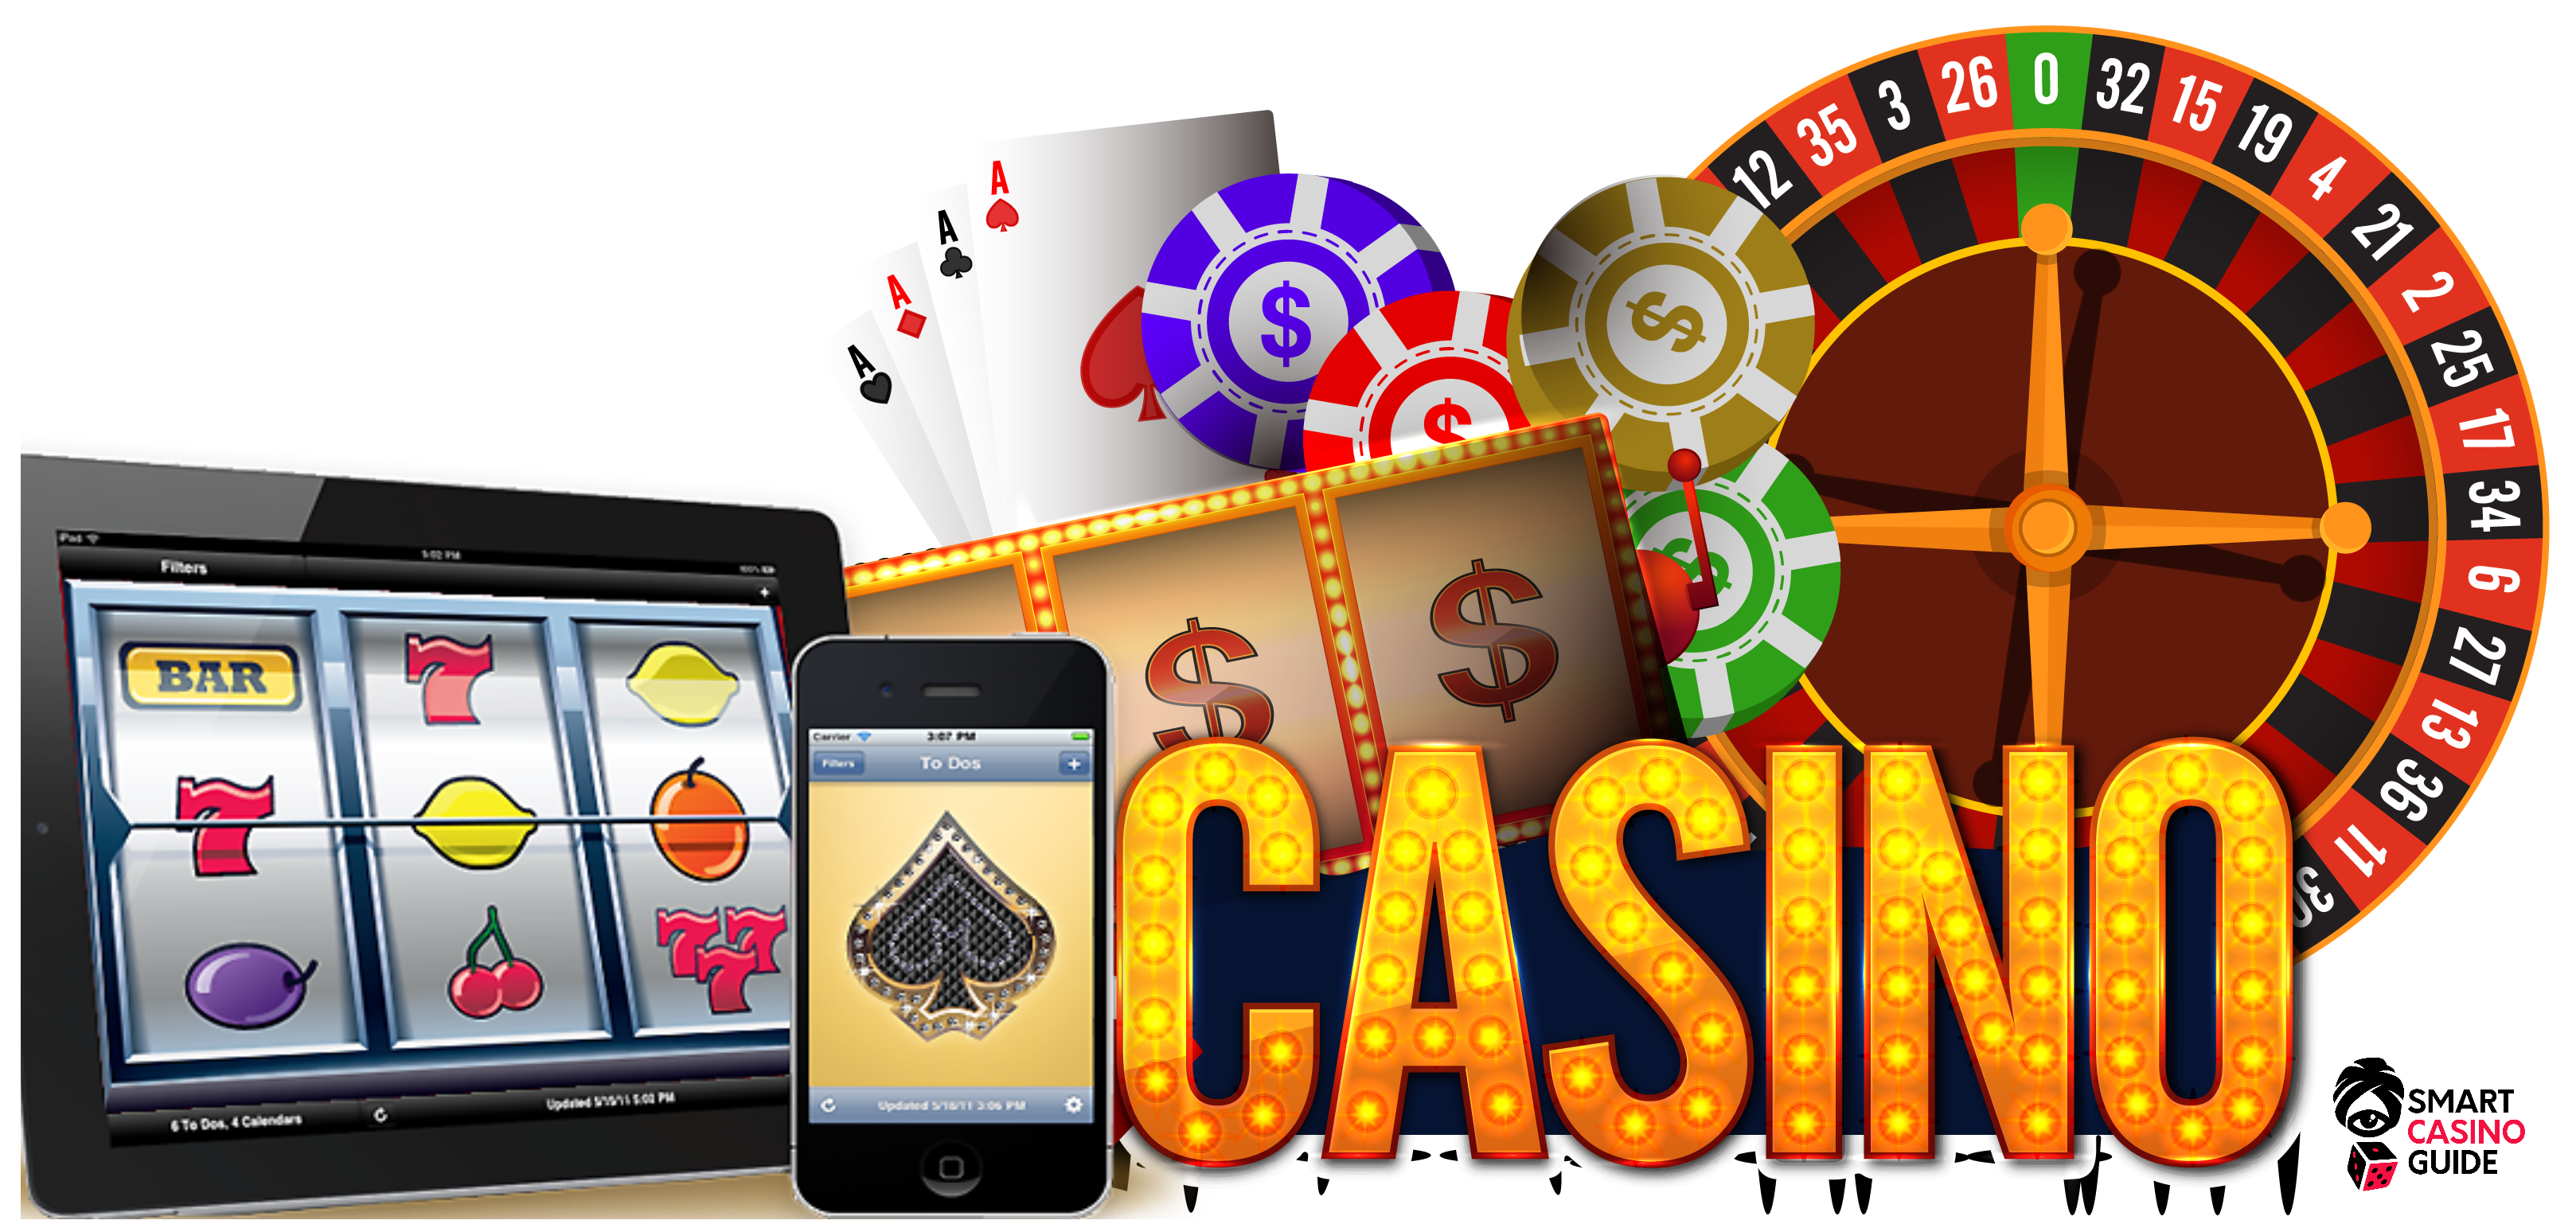 Phone Casino Free Deposit Gambling Online